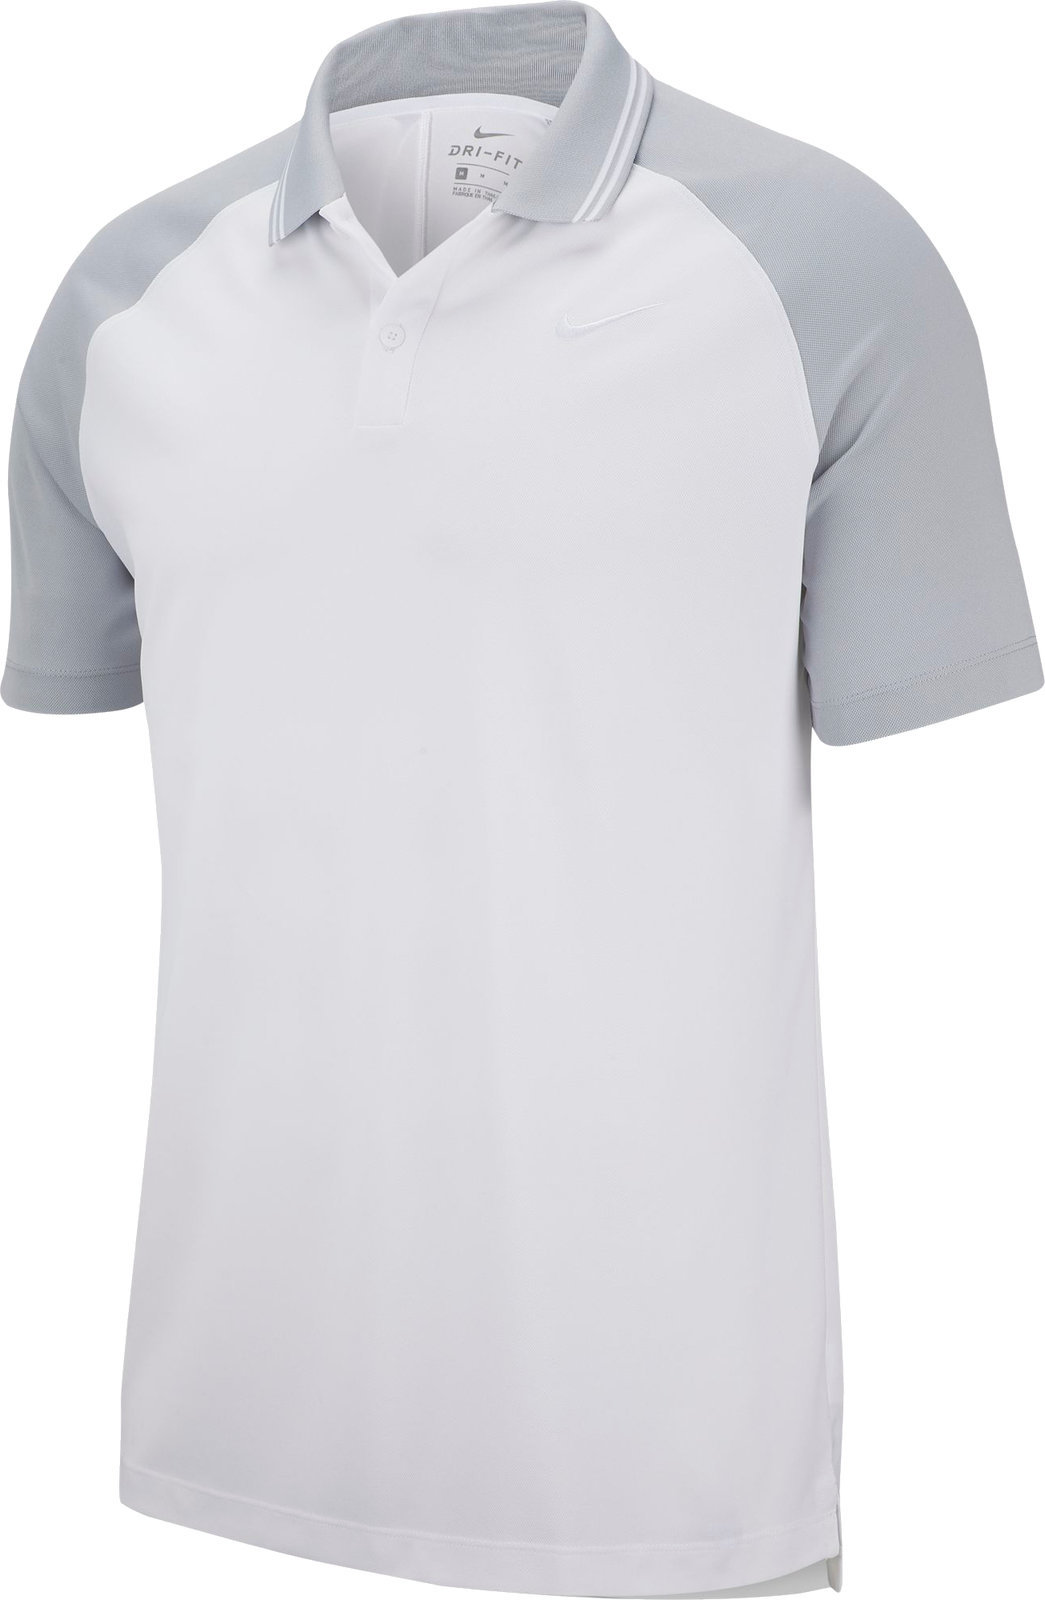 Πουκάμισα Πόλο Nike Dry Essential Tipped Mens Polo Shirt White/Wolf Grey 2XL